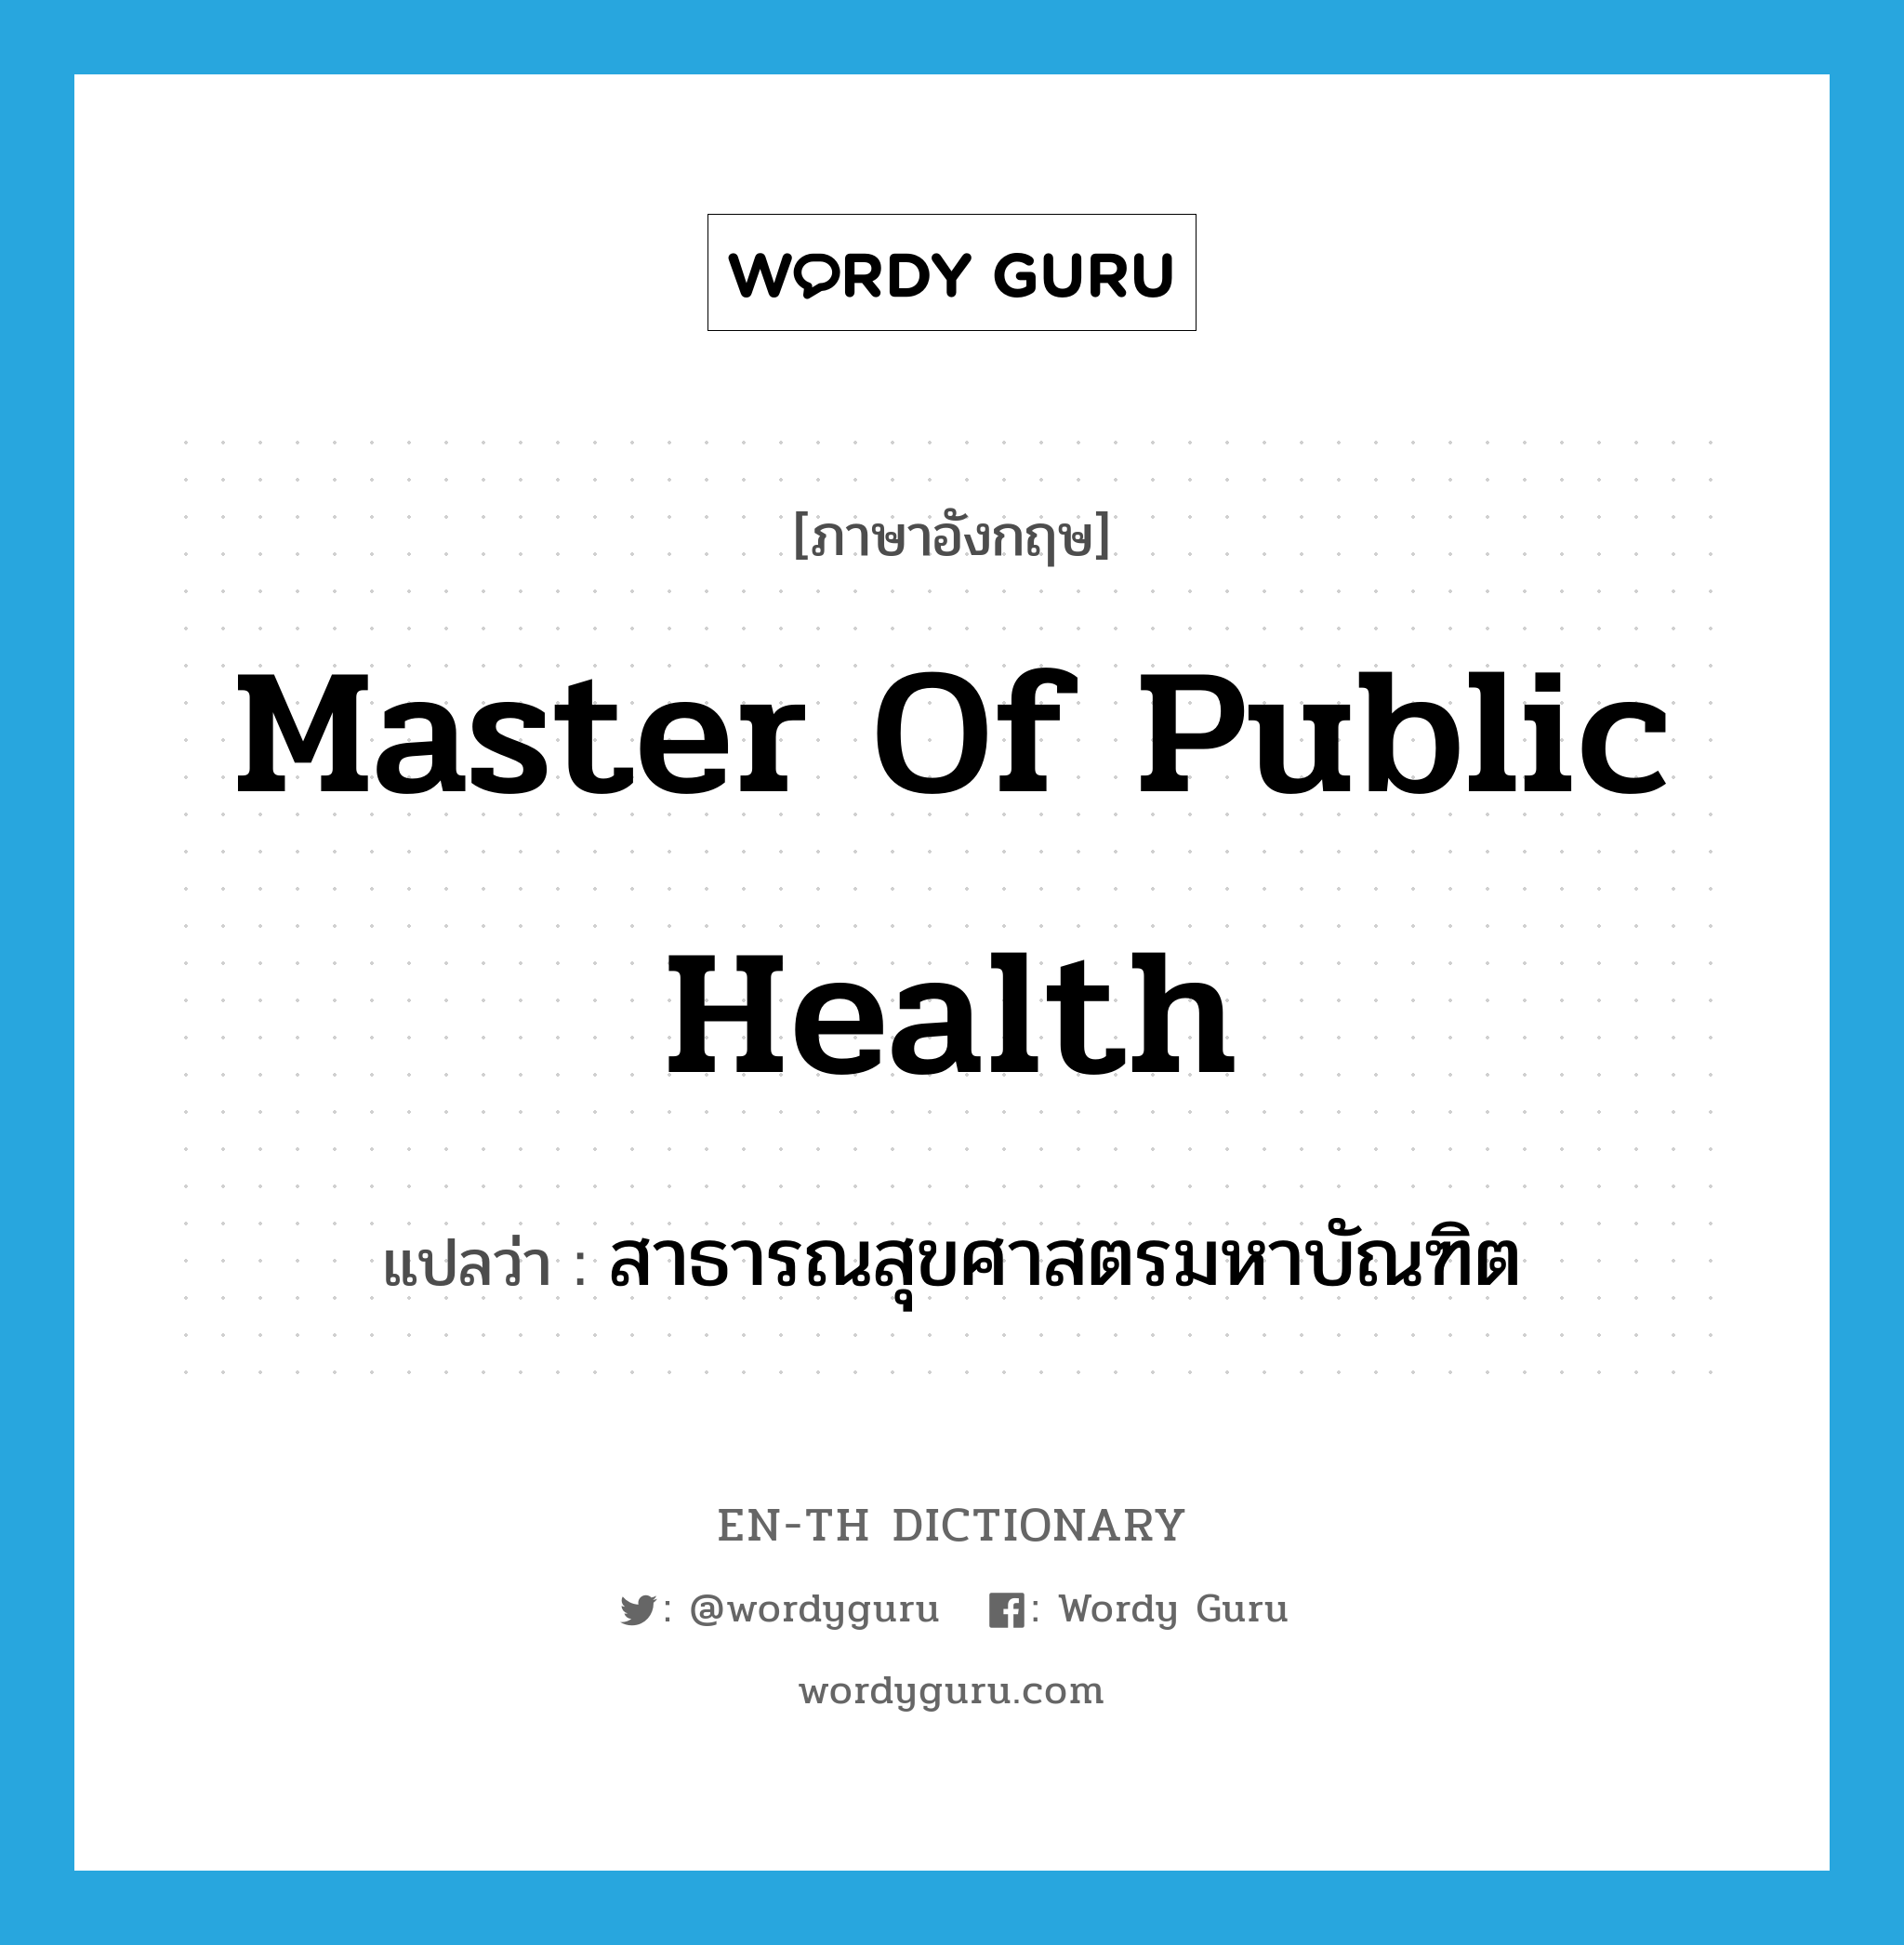 Master of Public Health แปลว่า?, คำศัพท์ภาษาอังกฤษ Master of Public Health แปลว่า สาธารณสุขศาสตรมหาบัณฑิต ประเภท N หมวด N